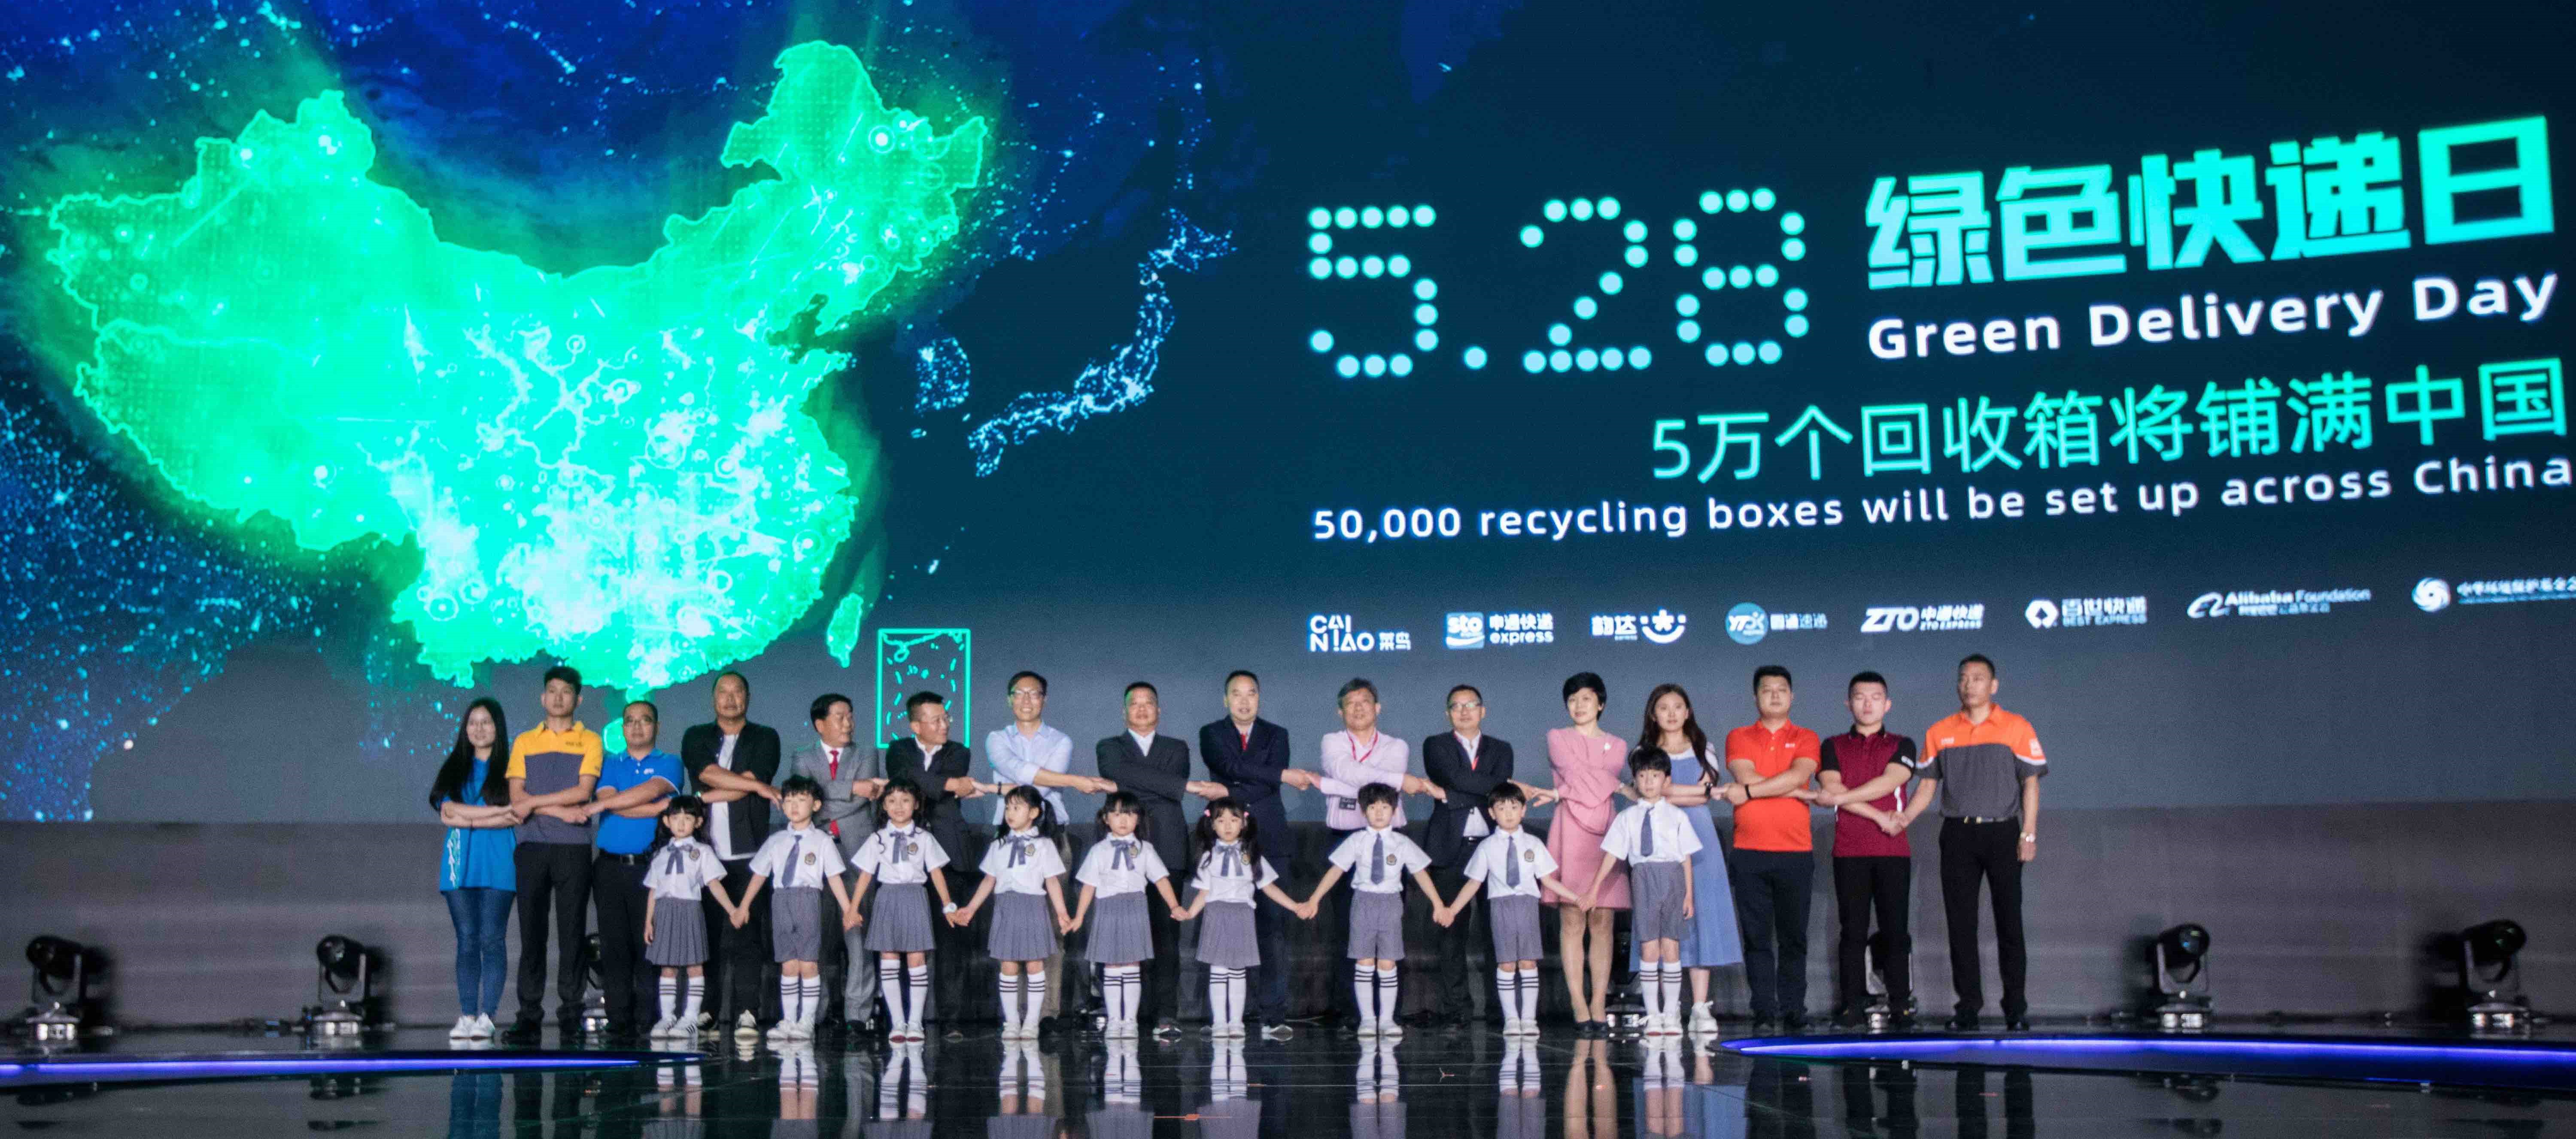 菜鸟启动绿色快递日 将新增5万个绿色回收箱